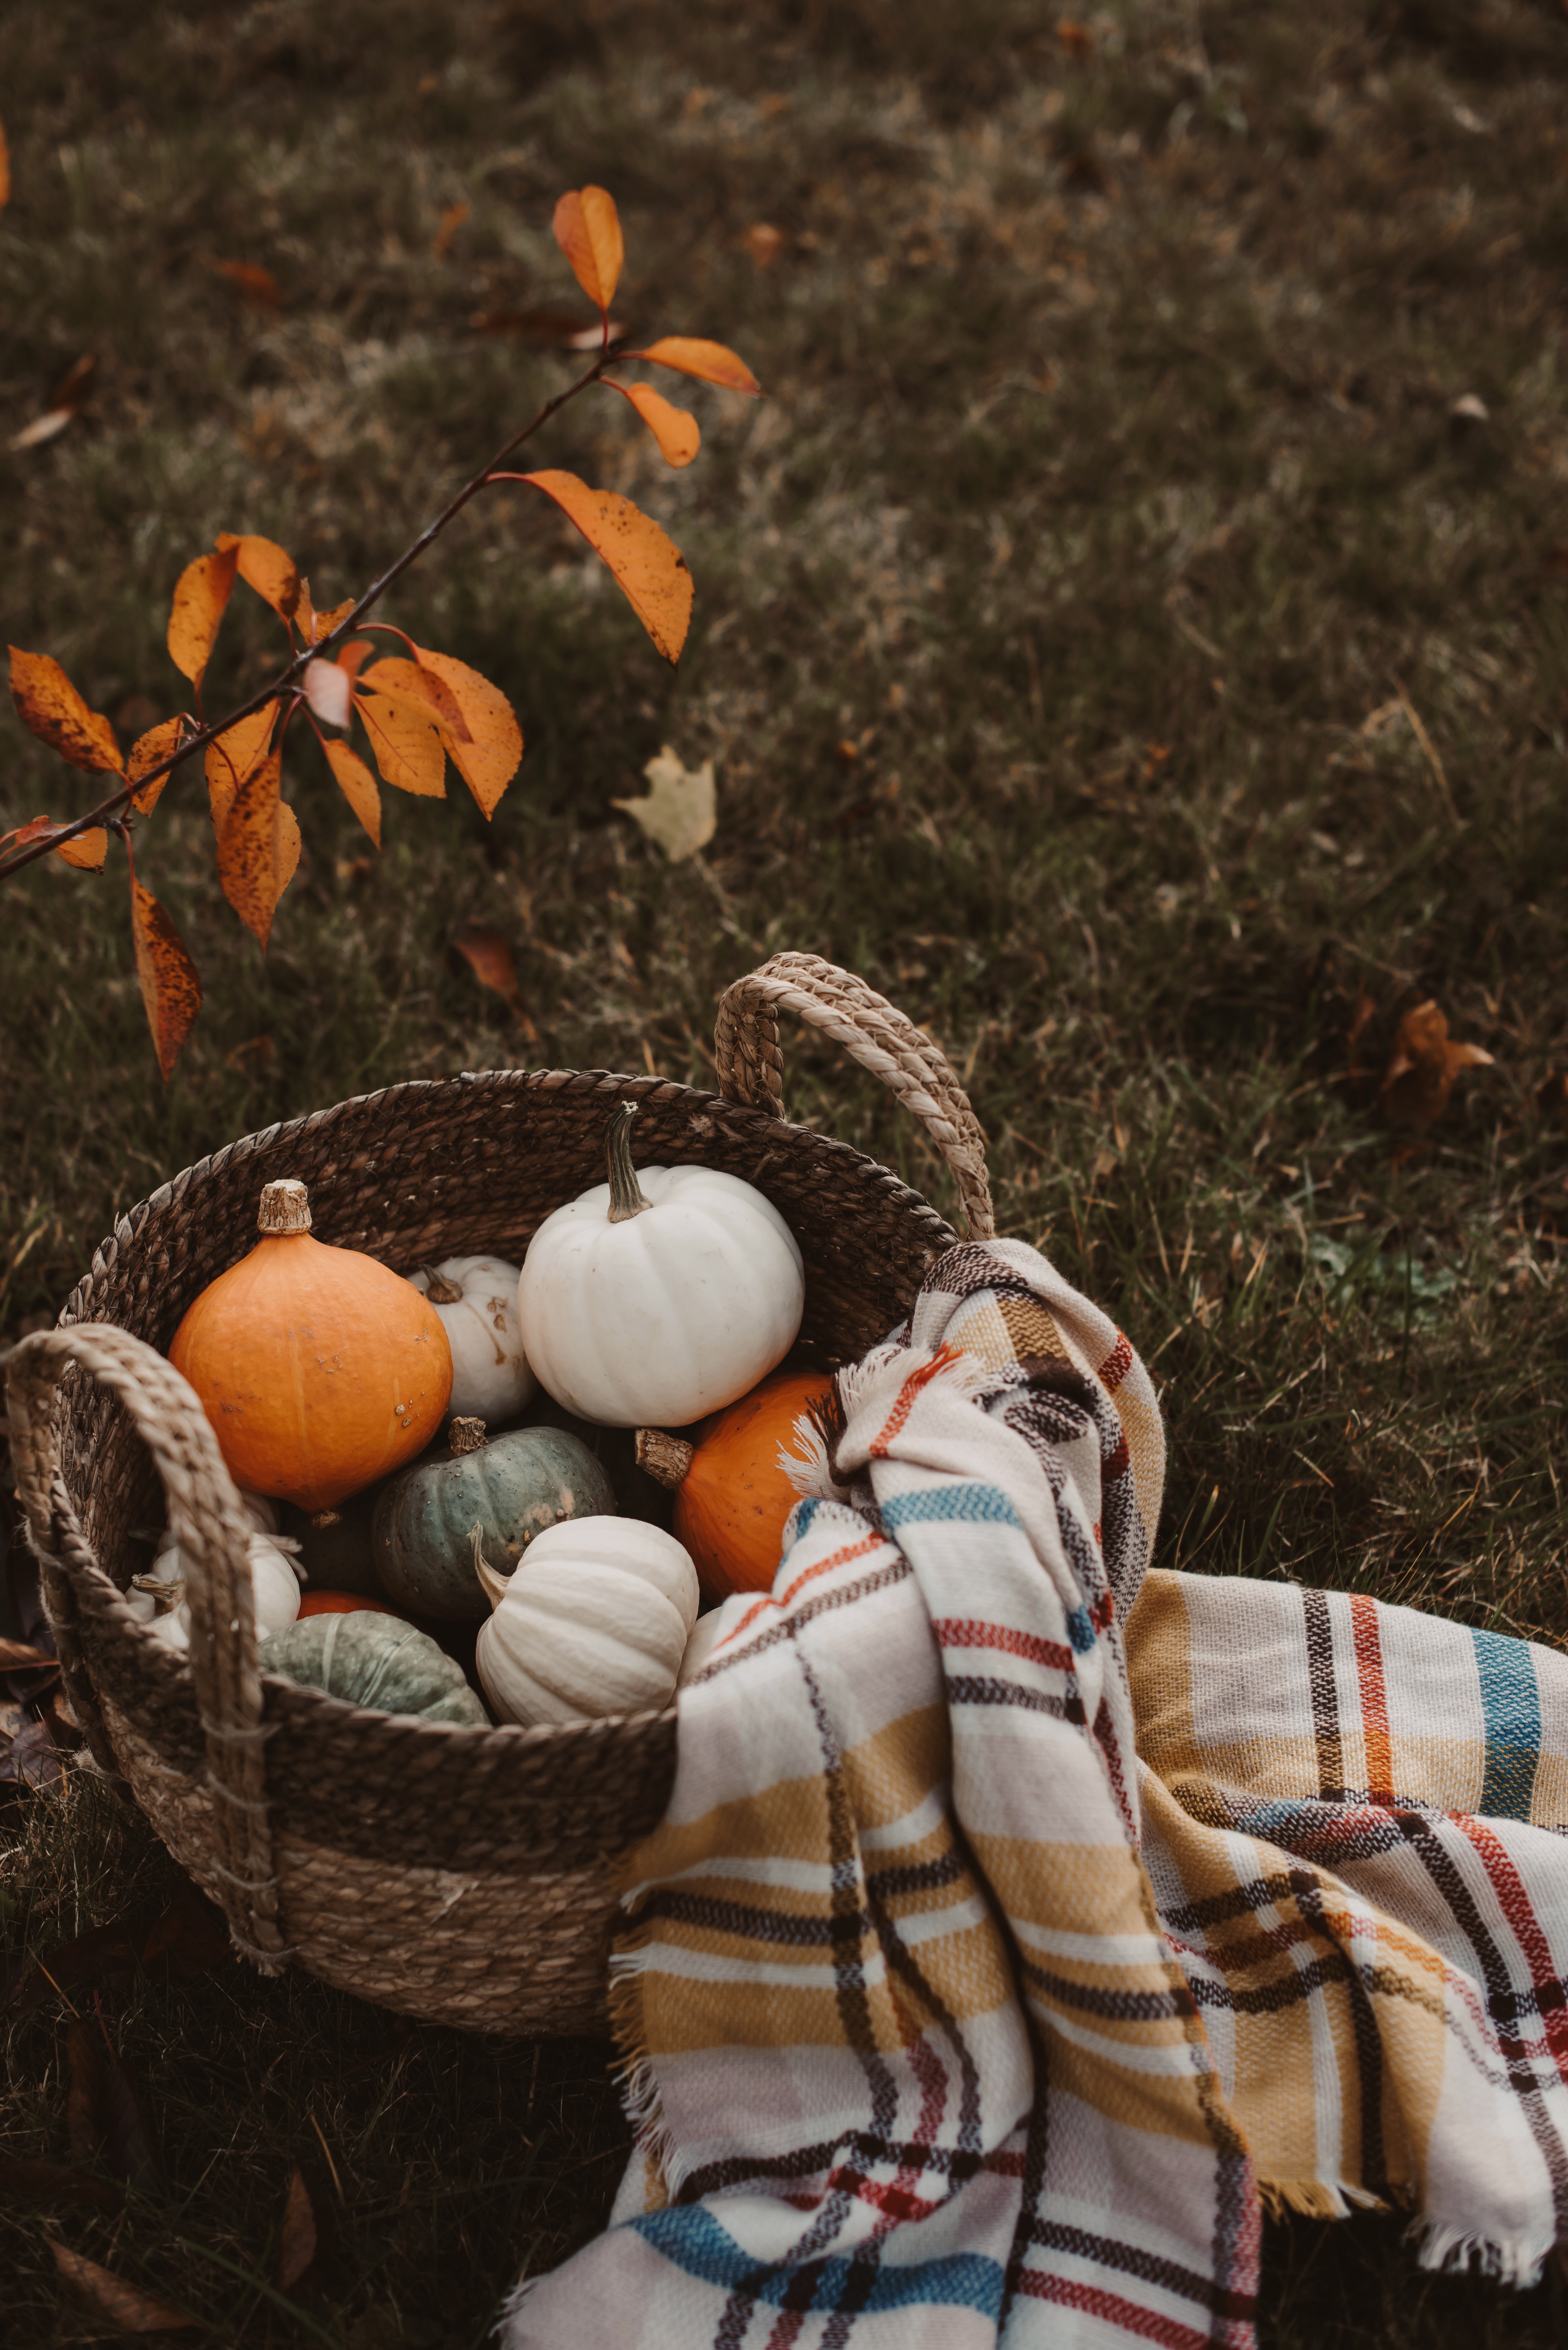 Free Images plaid, harvest, food, basket Autumn